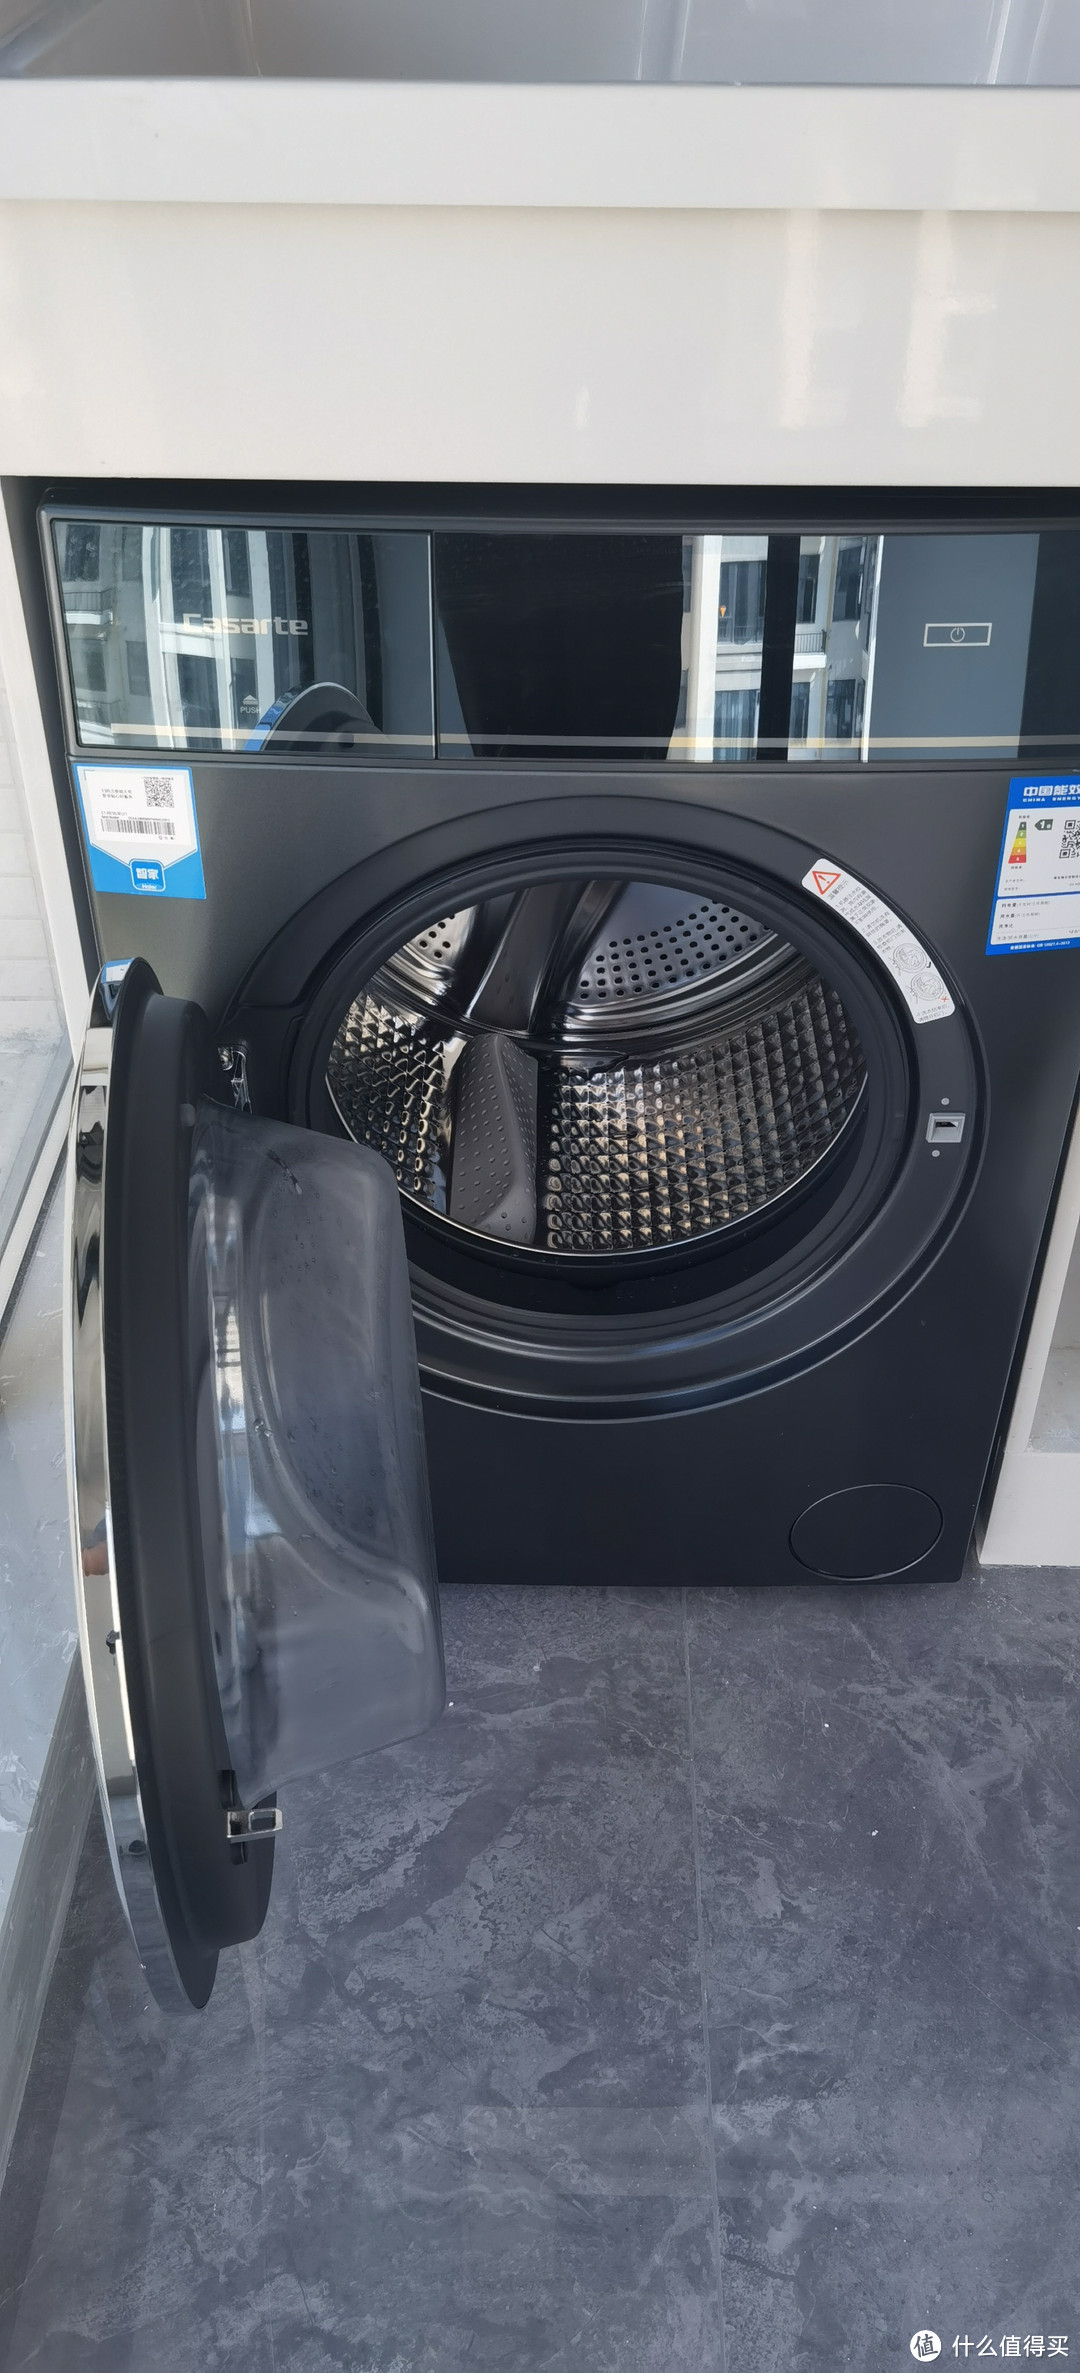 卡萨帝（Casarte）纤诺12公斤全自动直驱变频滚筒洗衣机